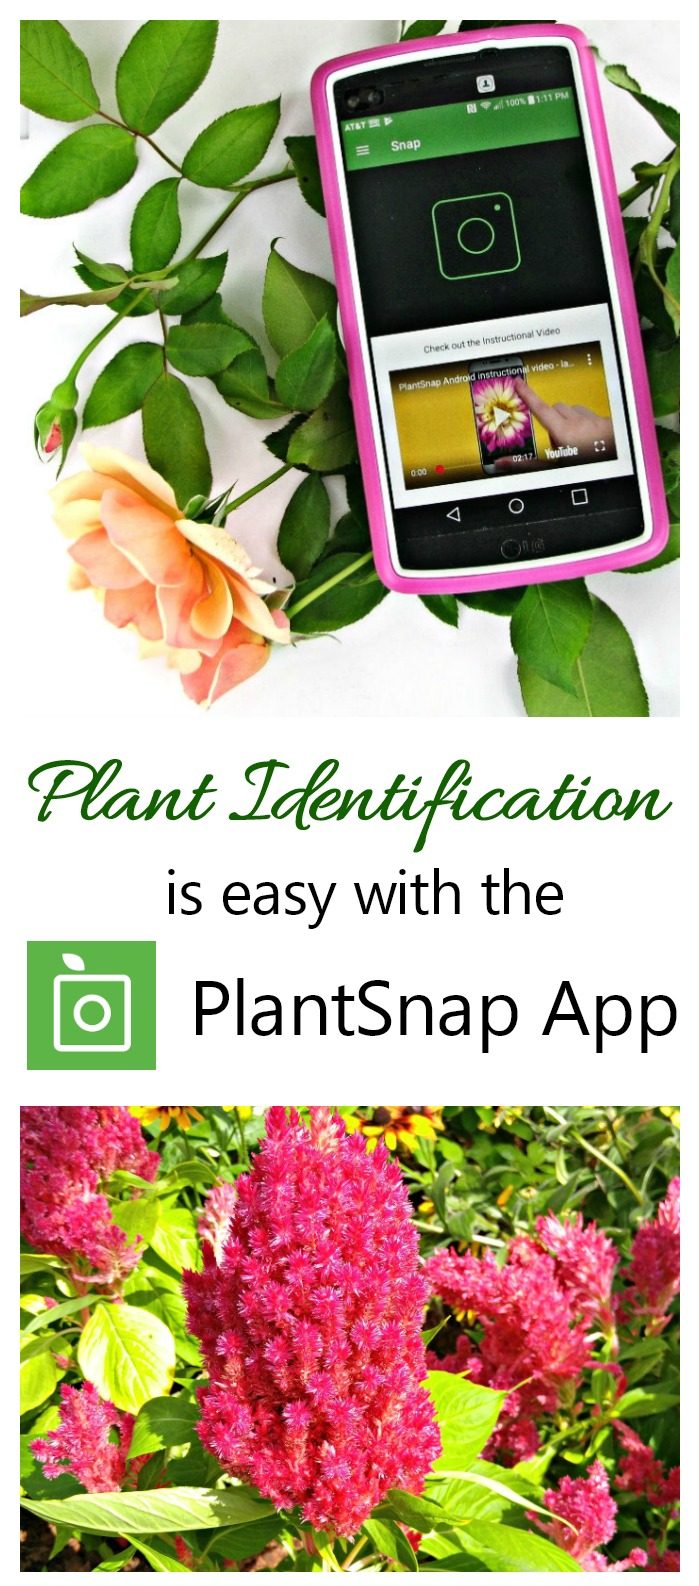 PlantSnap Mobile App - Trucos y consejos para obtener los mejores resultados